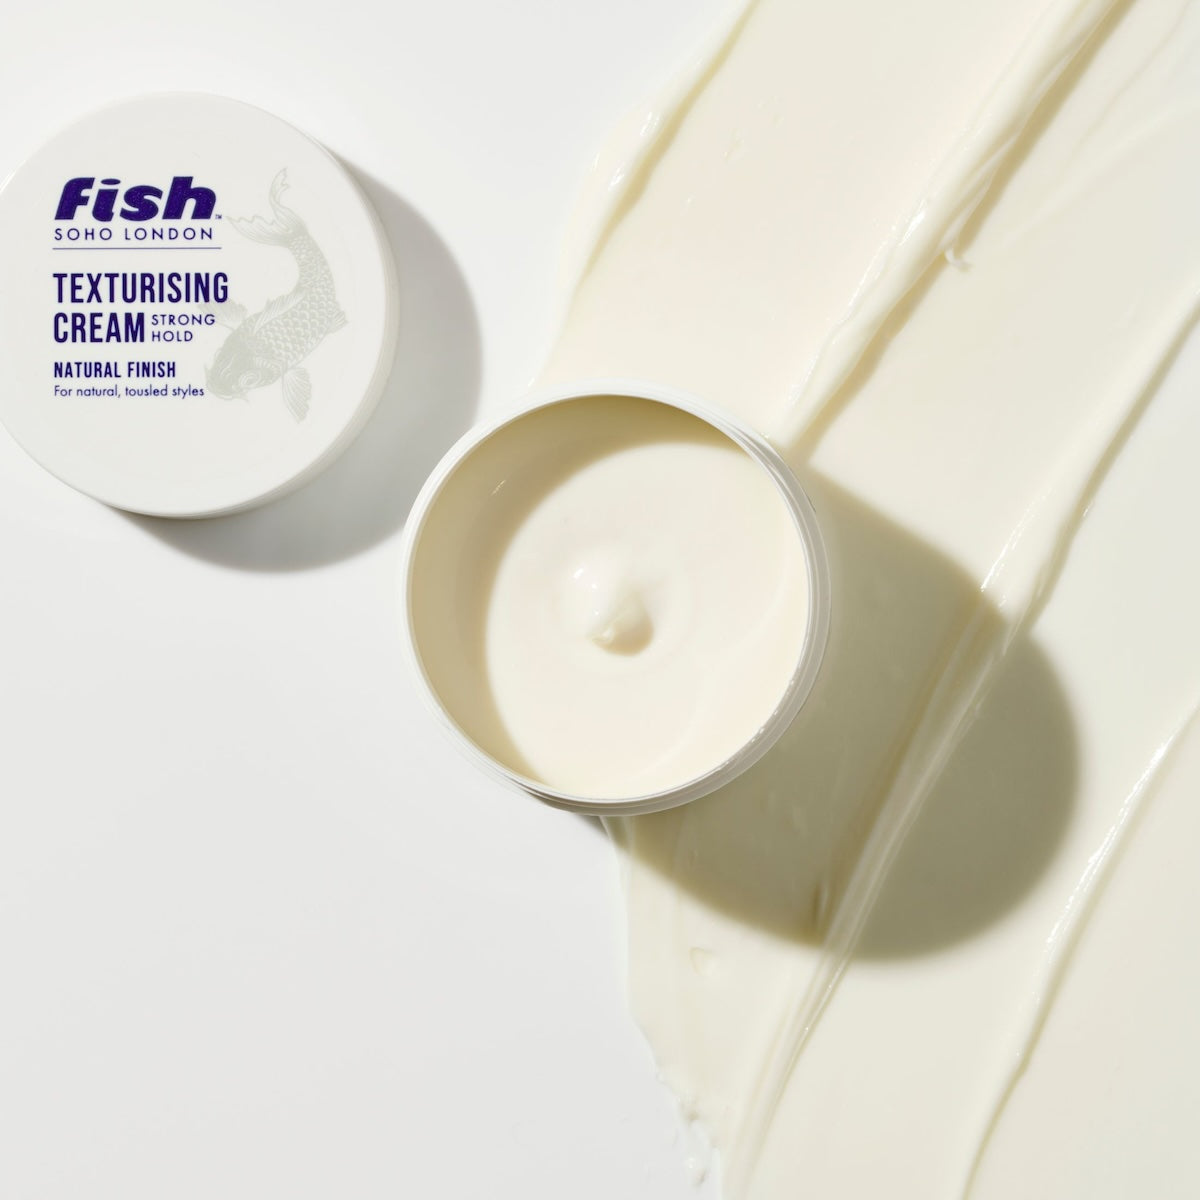 Fish Original Texturising Cream